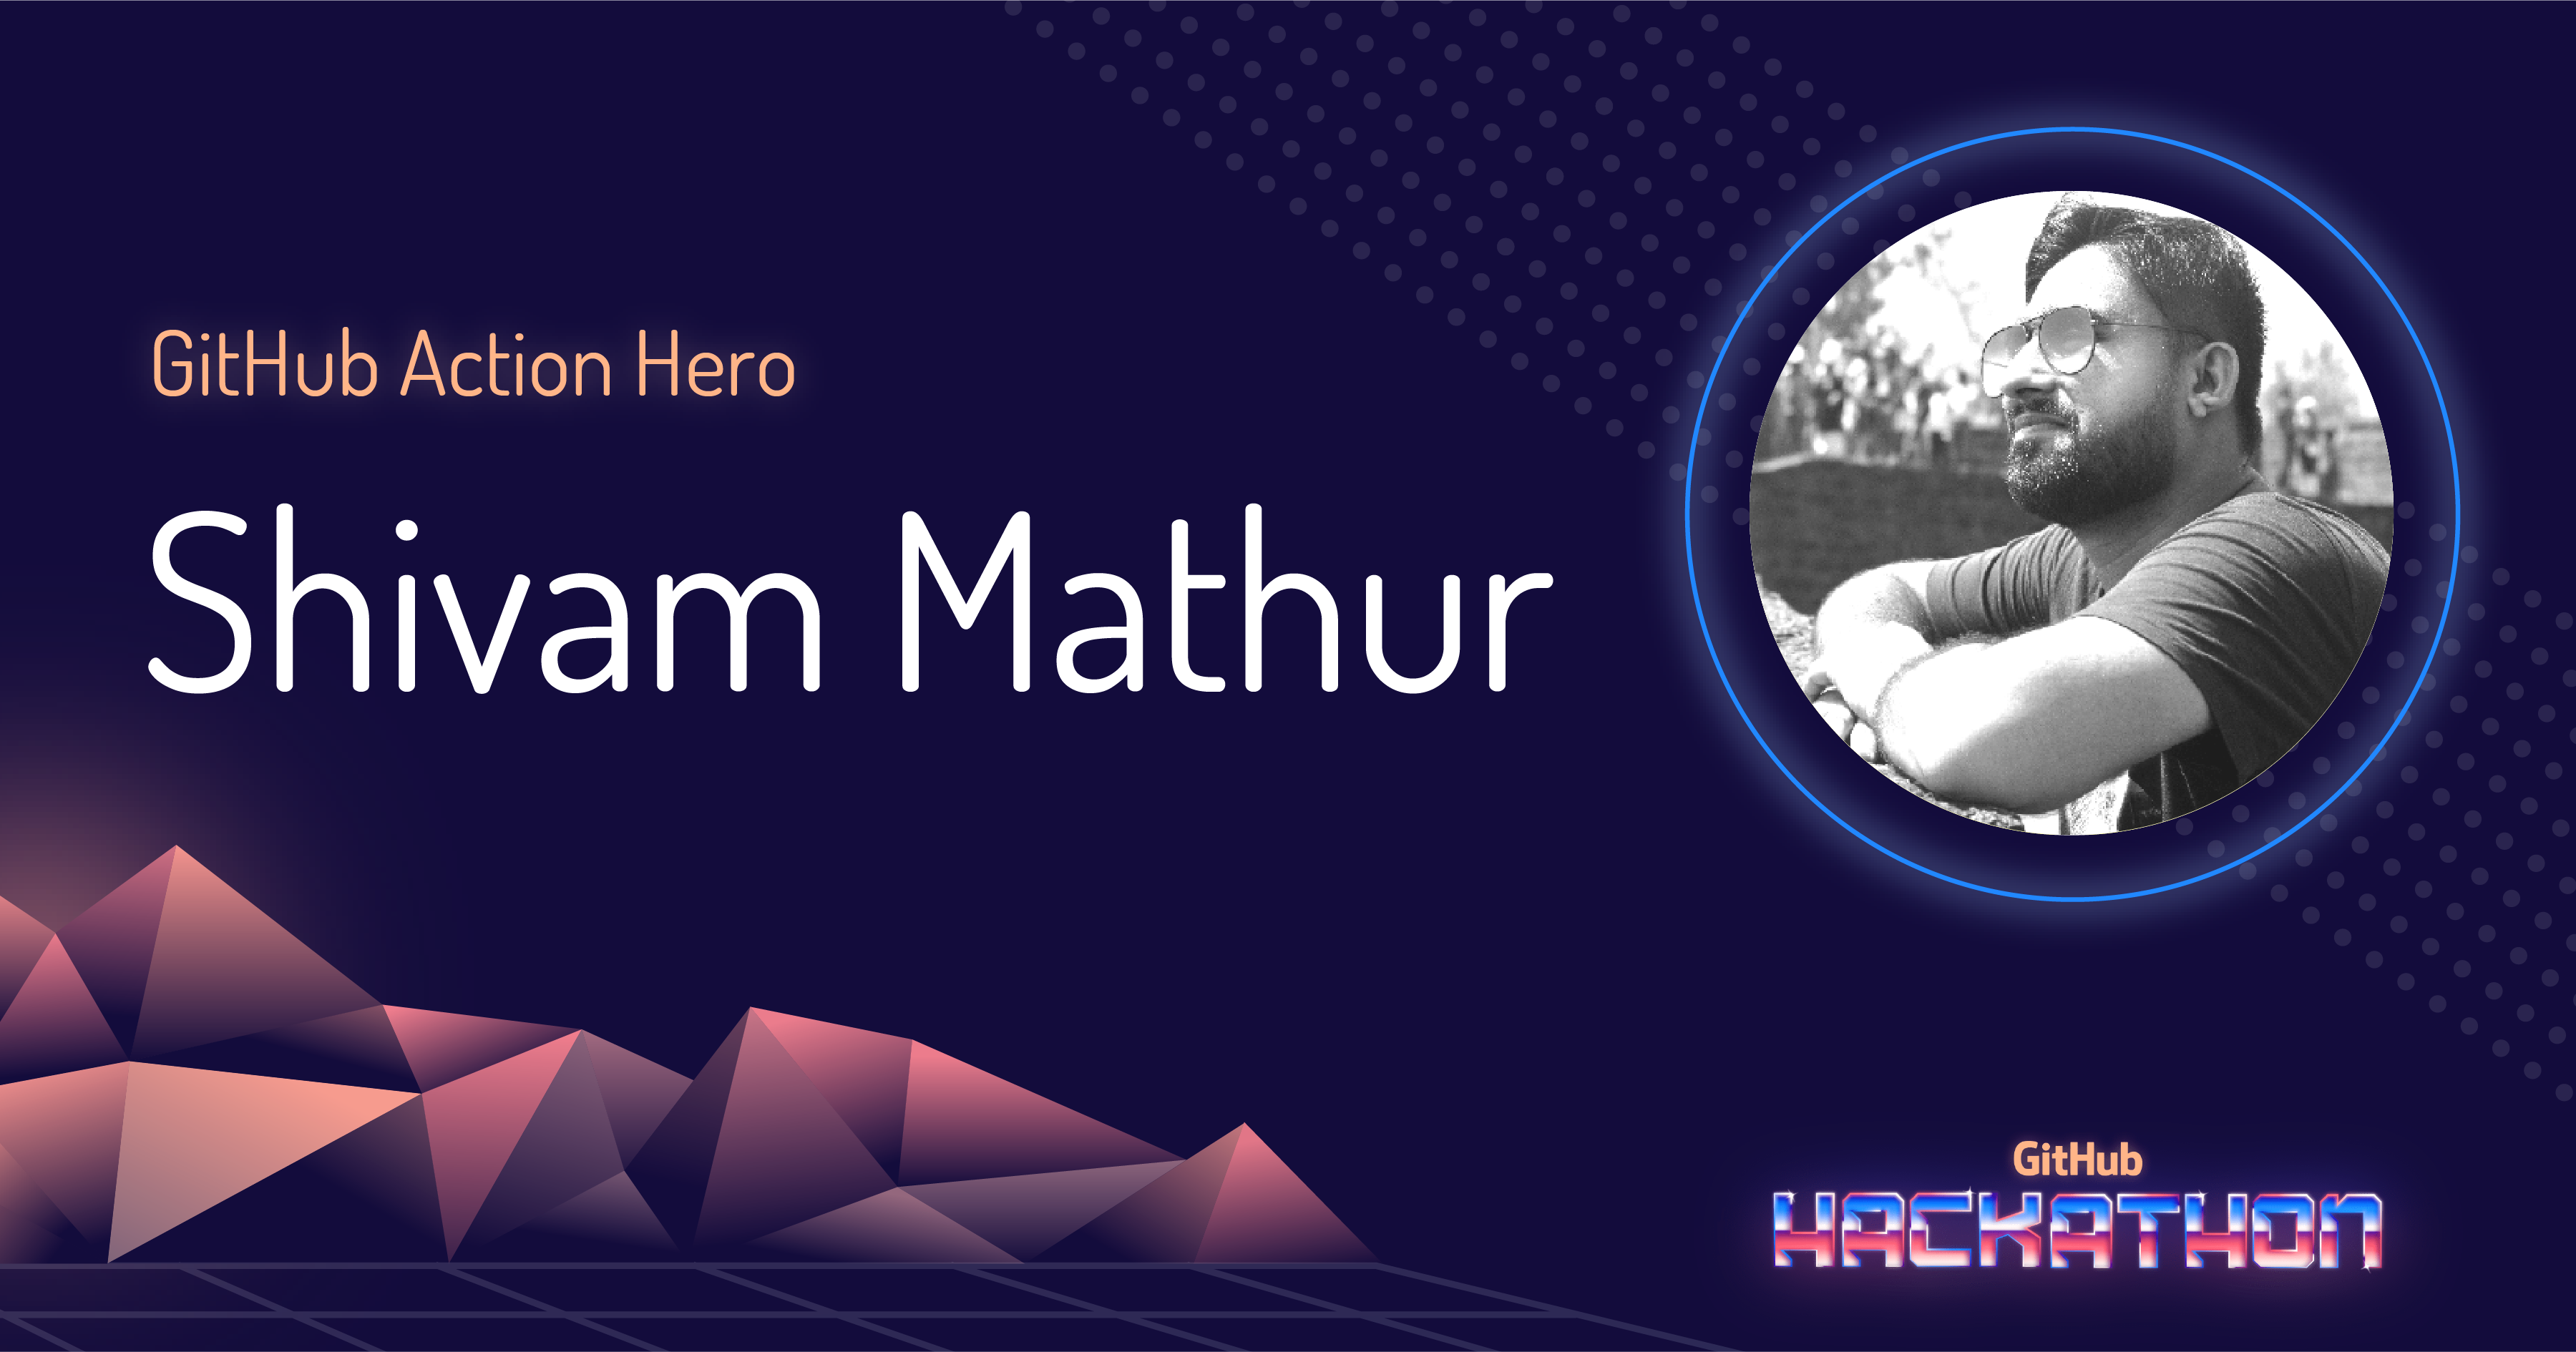 GitHub Action Hero: Shivam Mathur and "Setup PHP" 